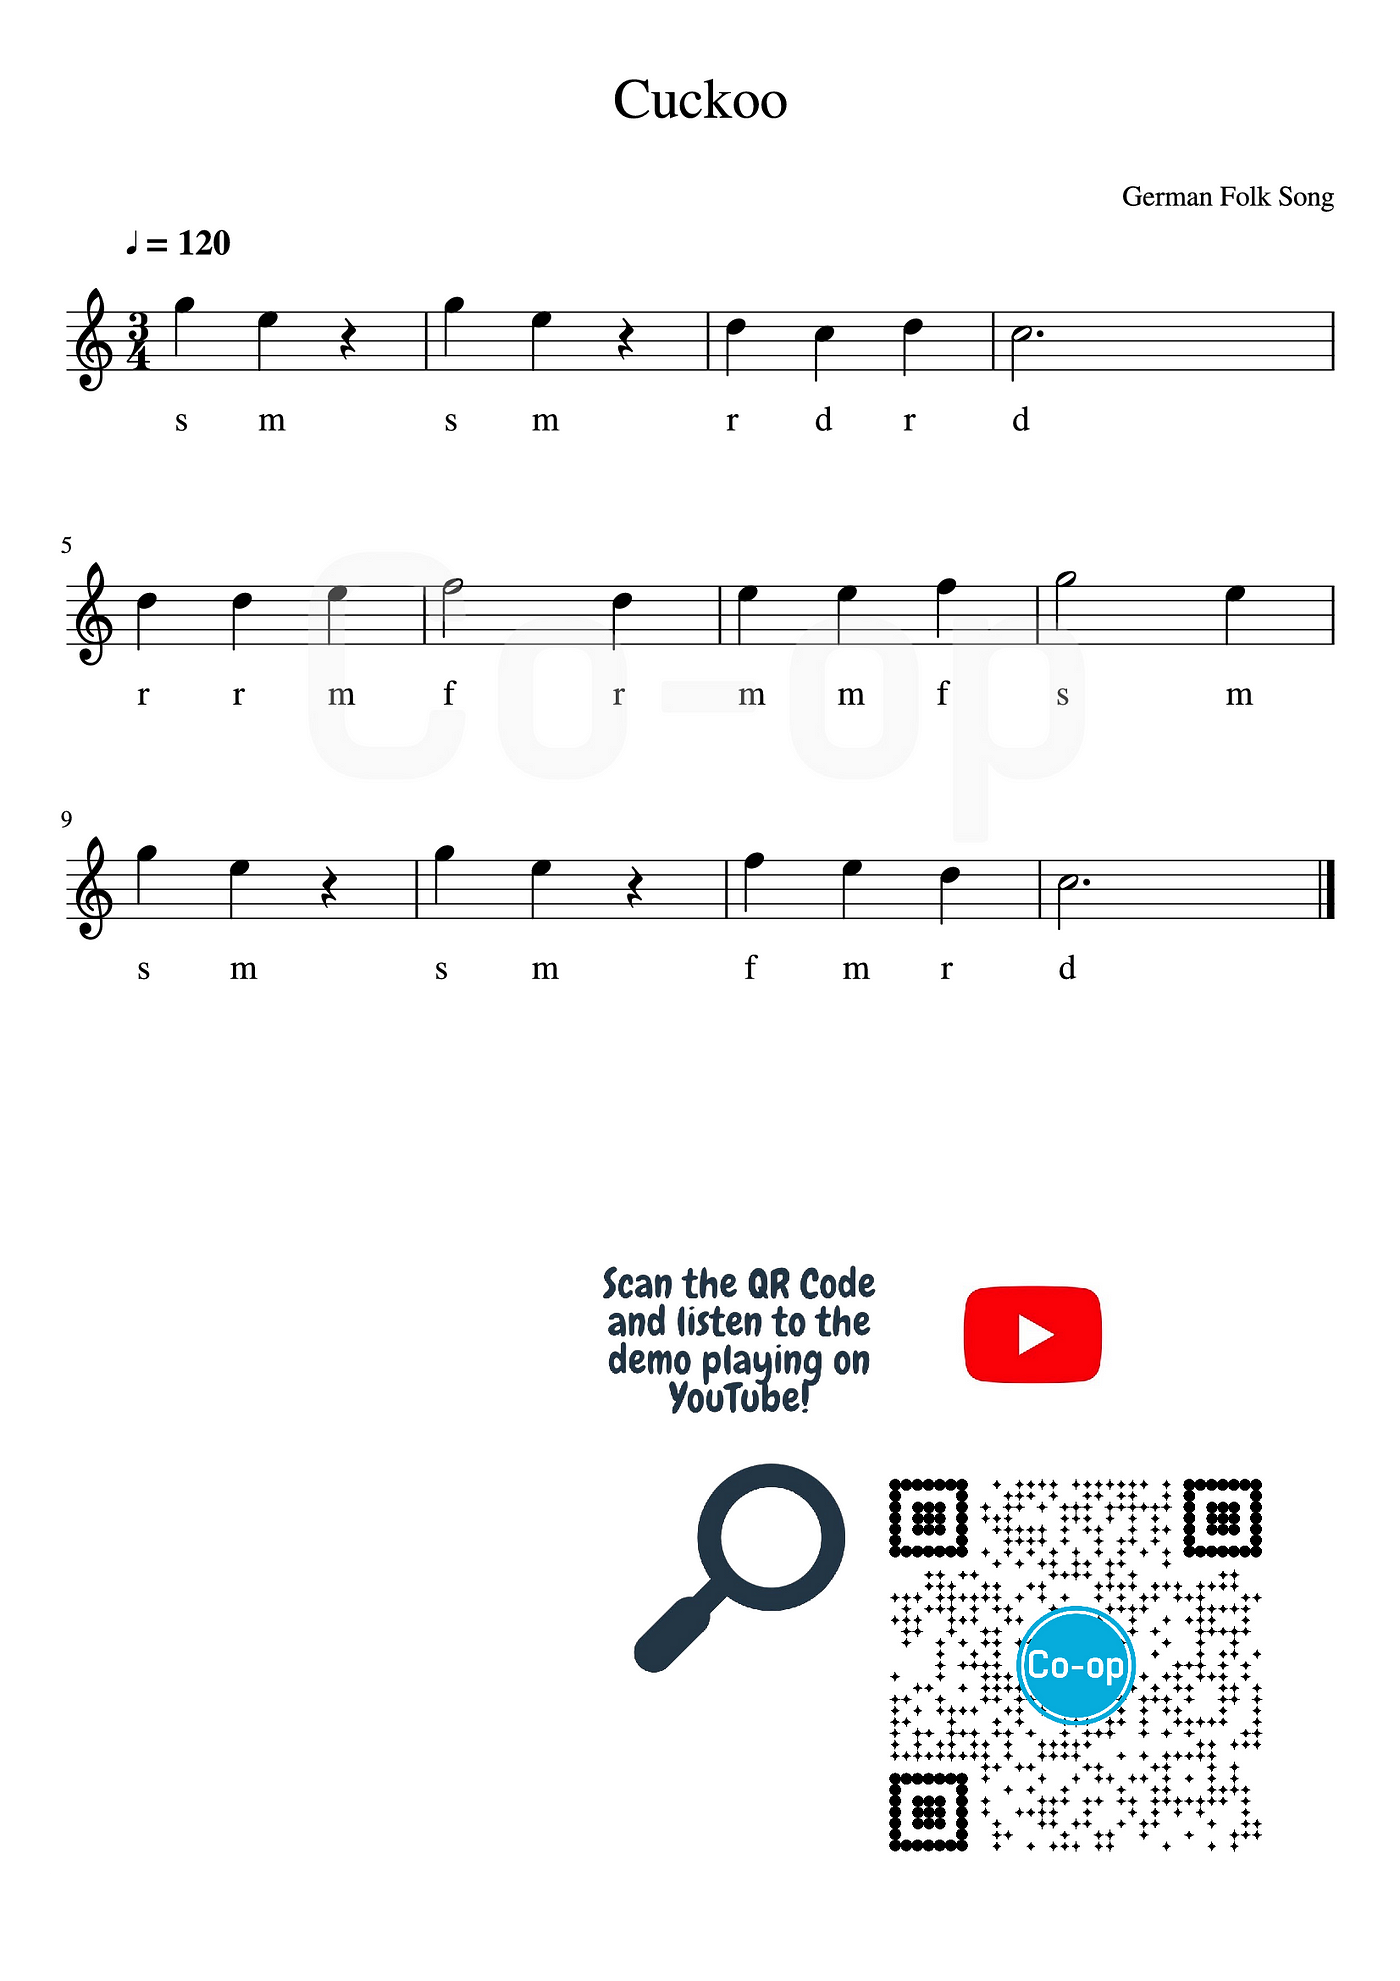 Learn “Twinkle, Twinkle Little Star” in 5 Minutes, by Co-op Music, Co-op  Music